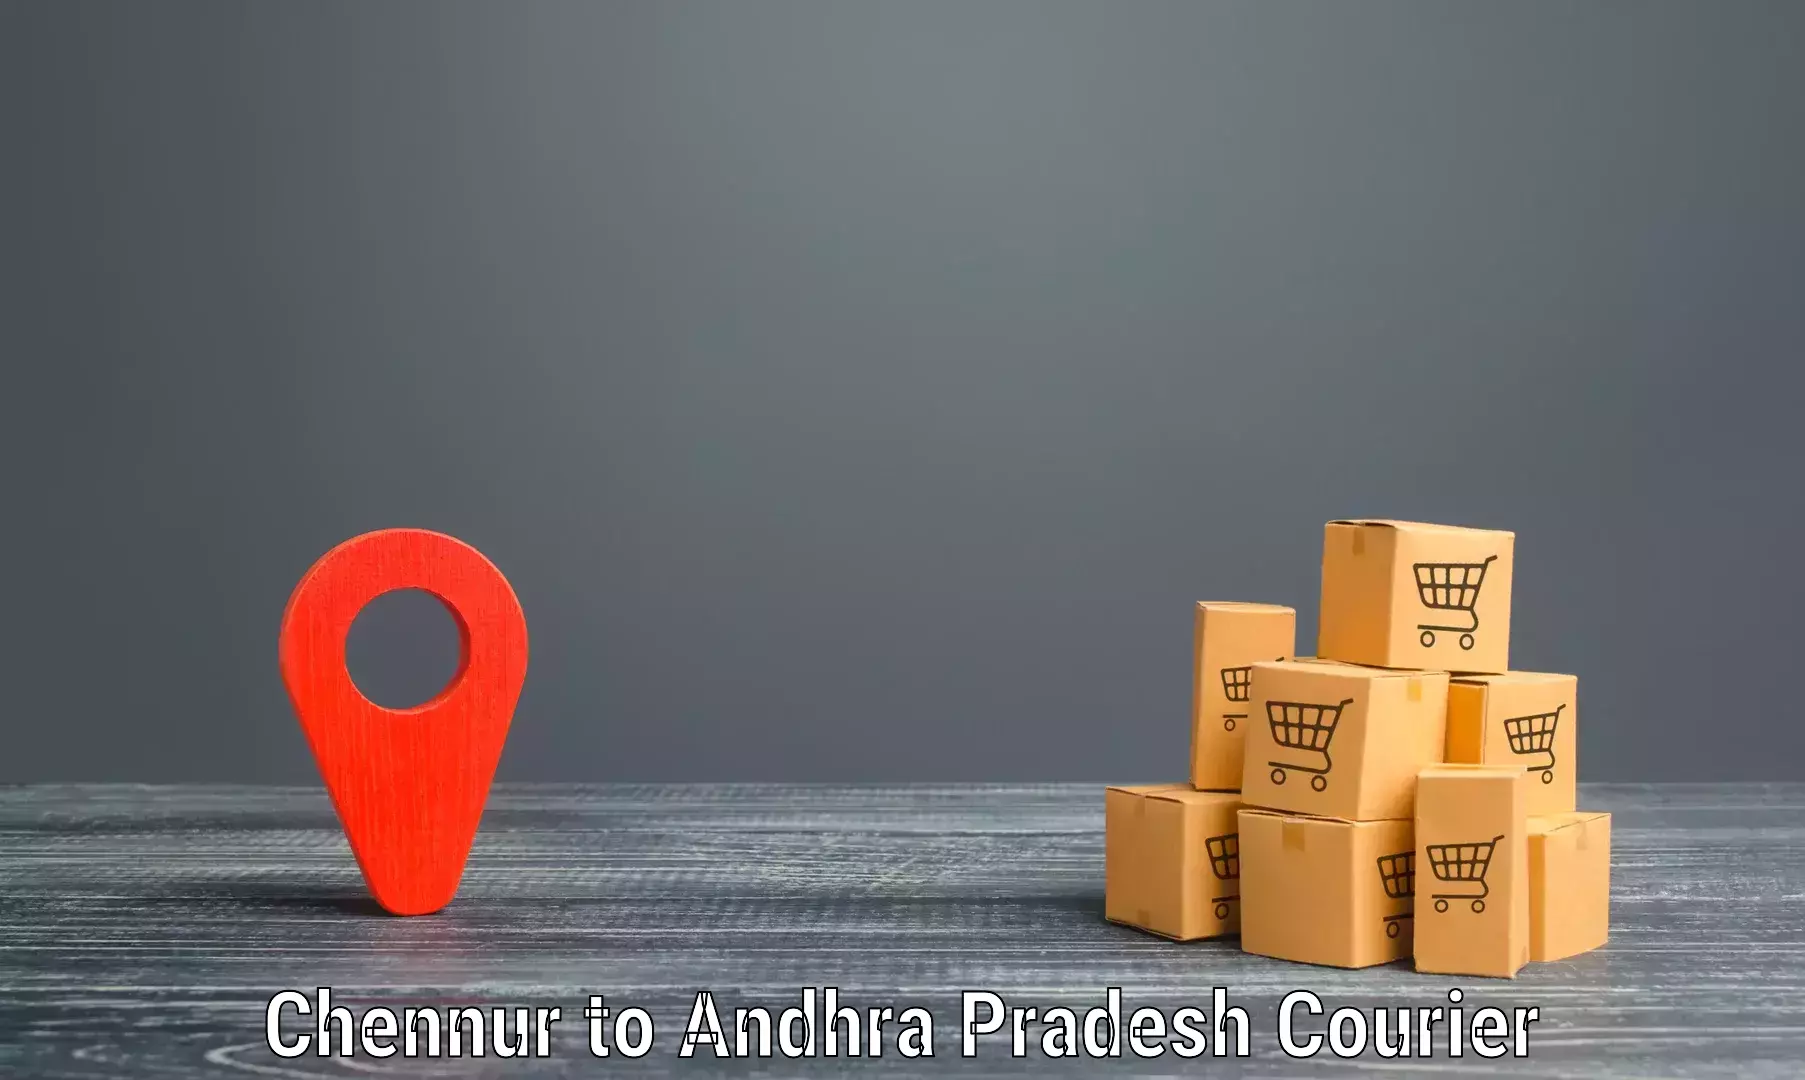 Express logistics providers Chennur to Puttur Tirupati